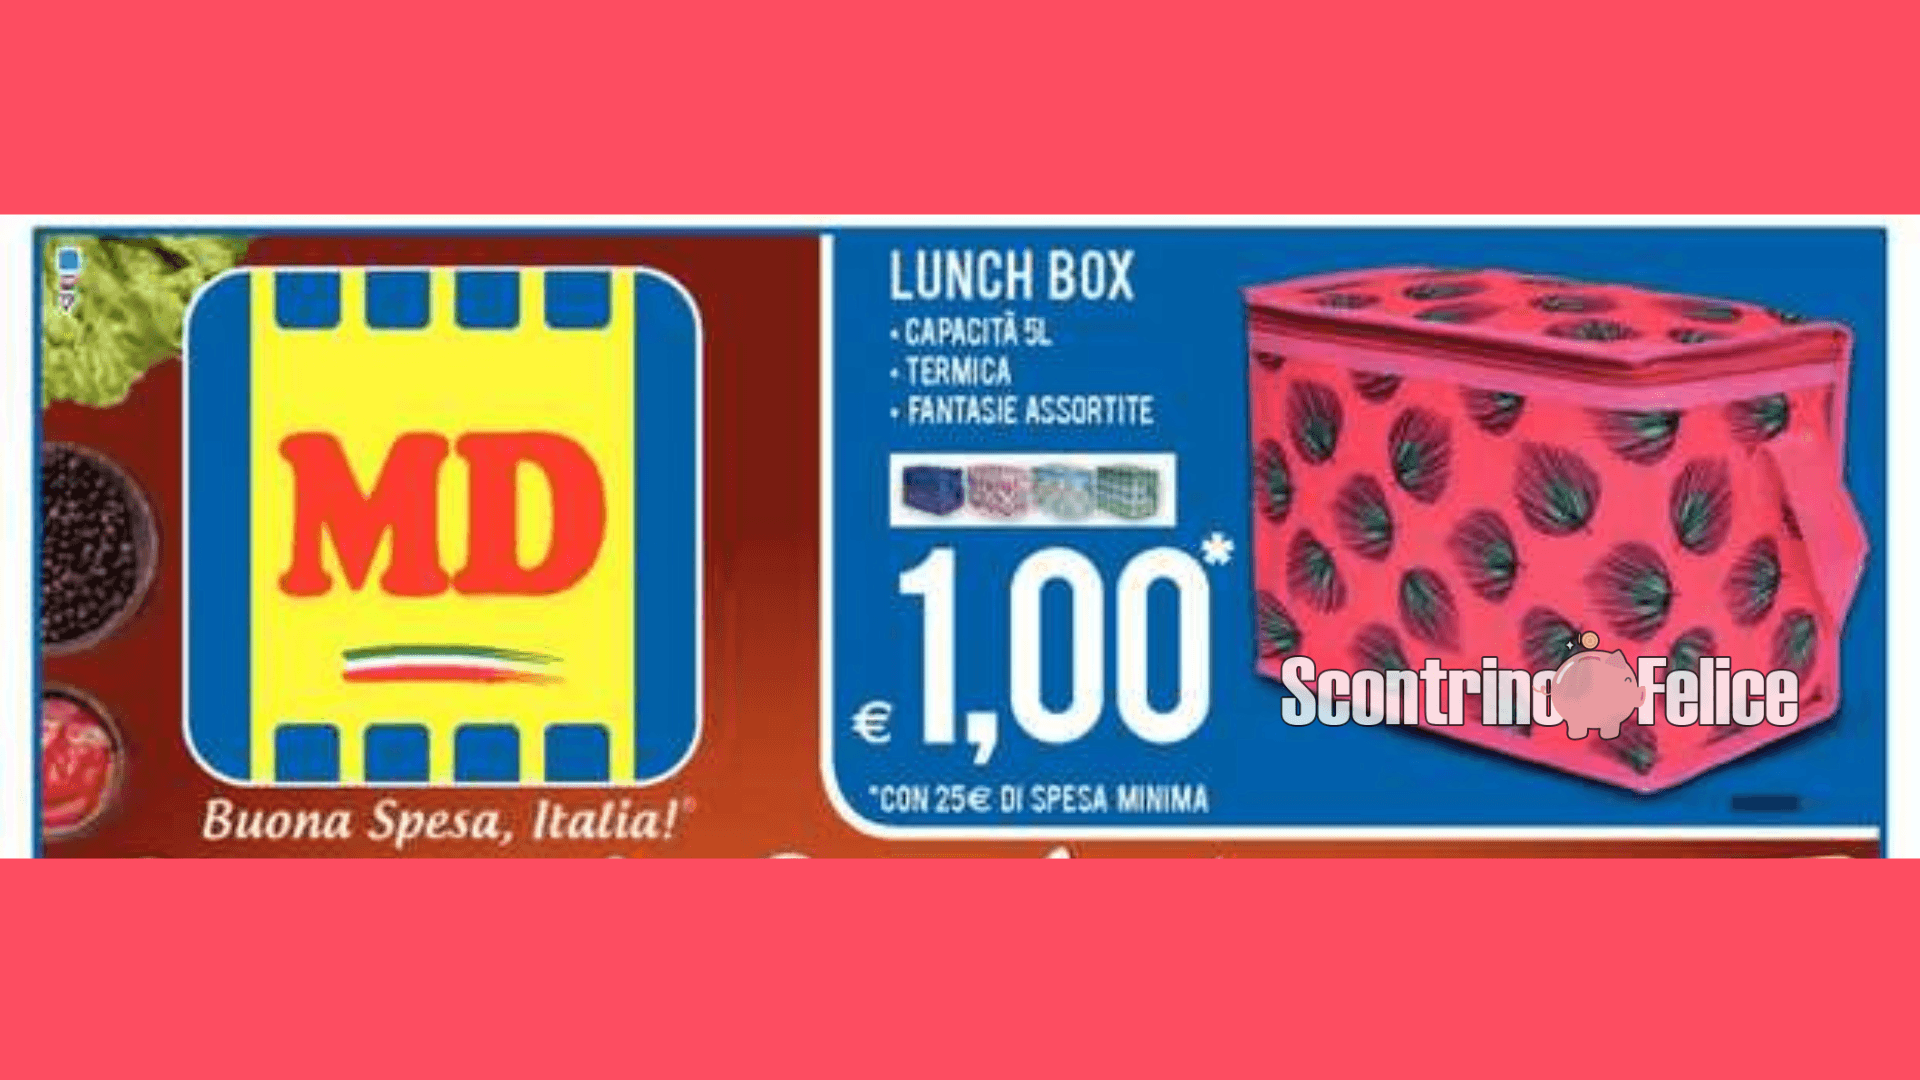 Lunch box a solo 1 euro da MD: scopri come averla! 11